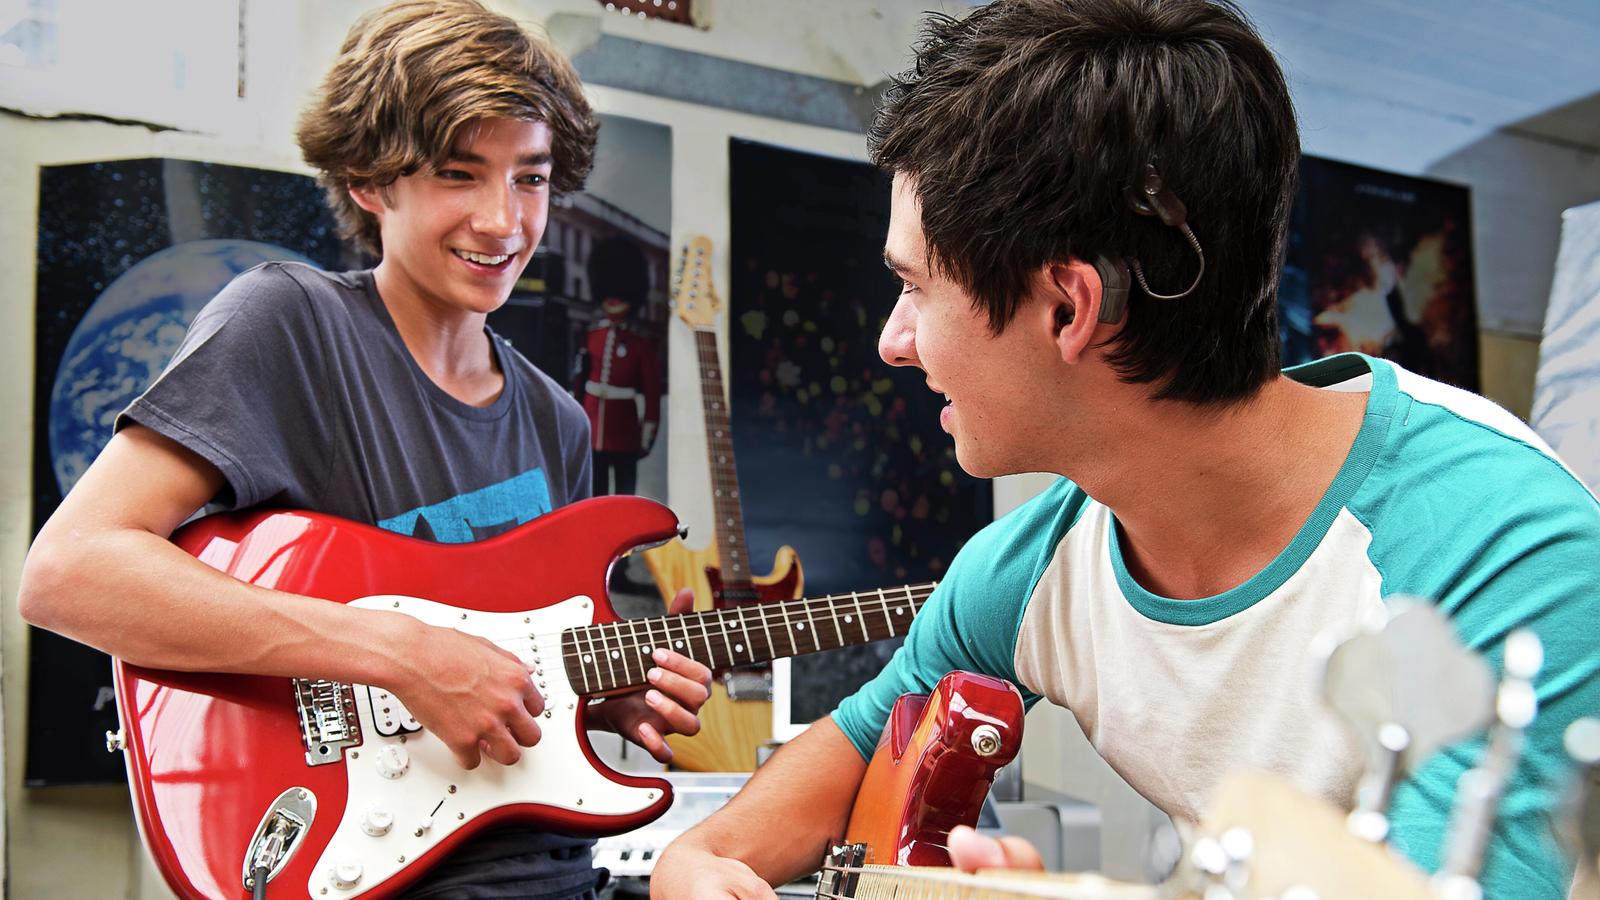 Кристофер, пользователь кохлеарного импланта, играет с другом на гитаре